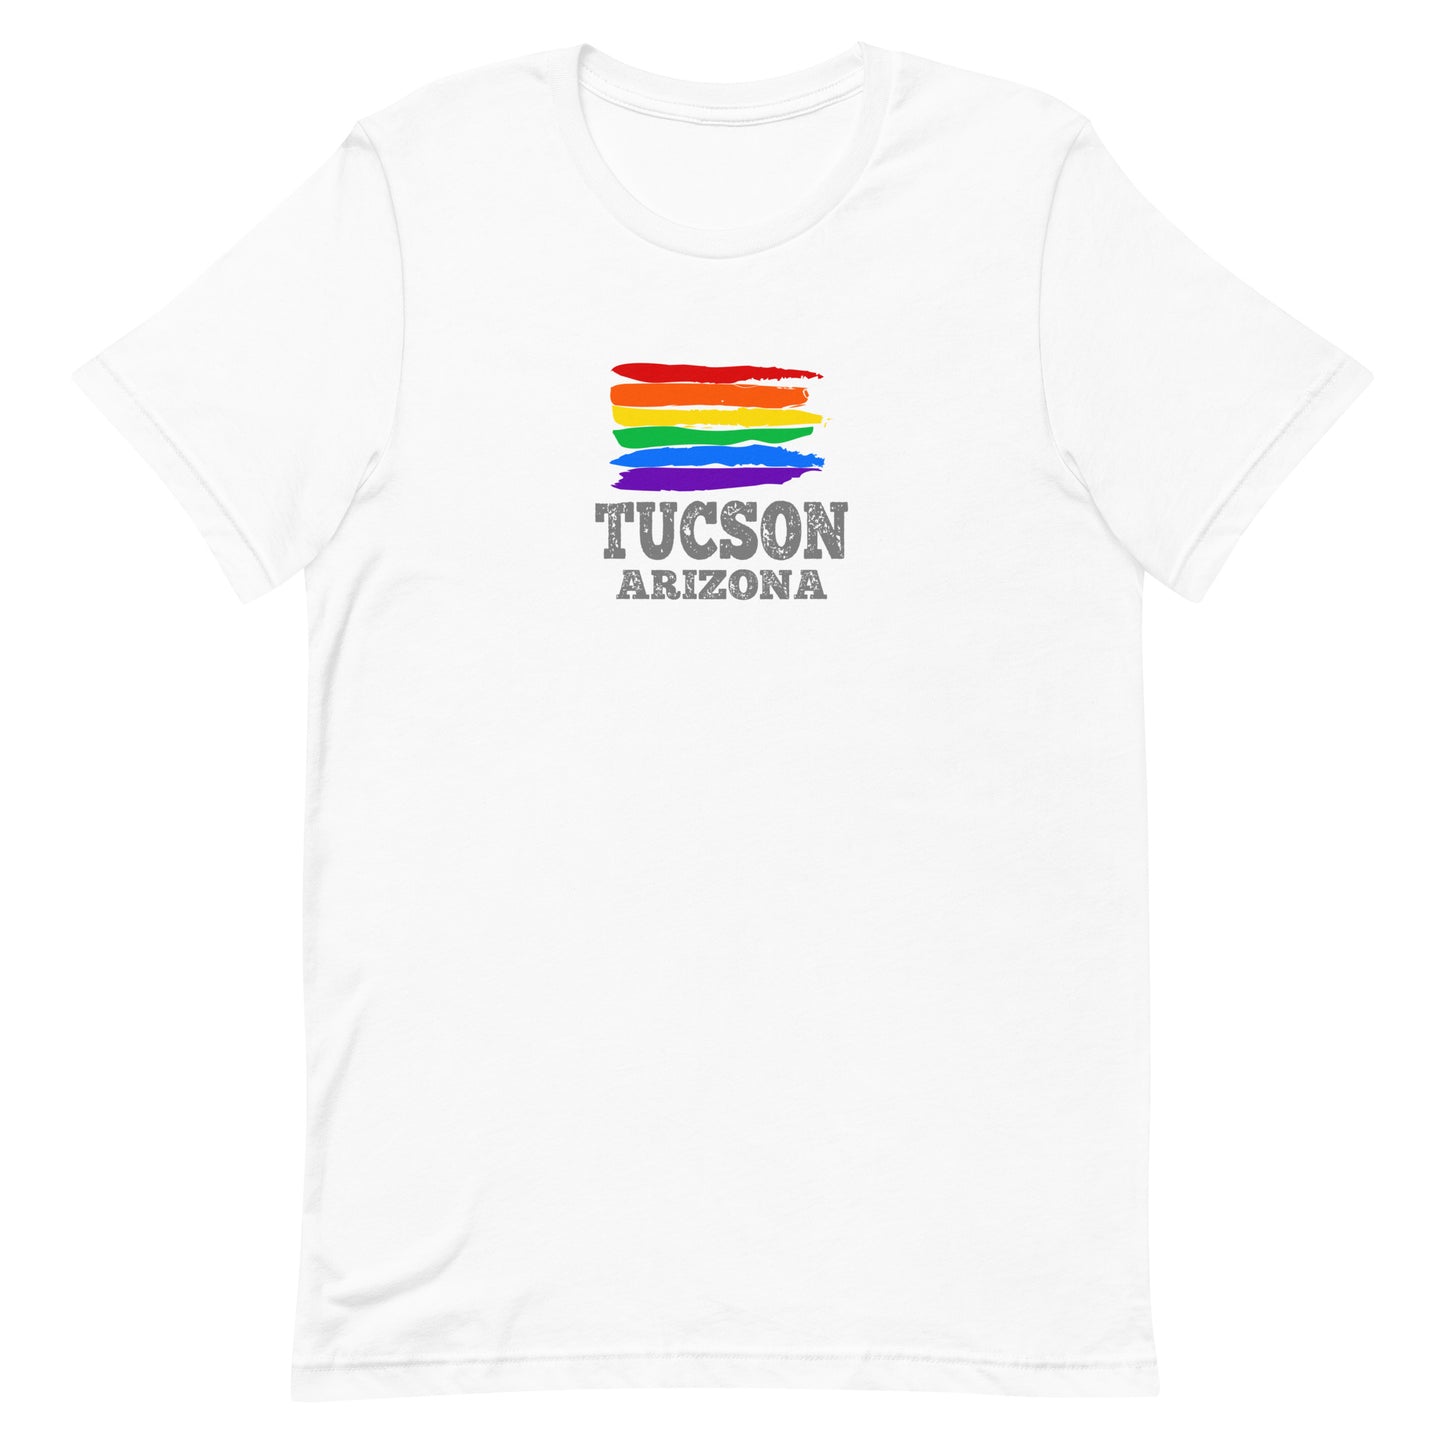 Tucson Arizona LGBTQ+ Gay Pride T-Shirt - gay pride apparel